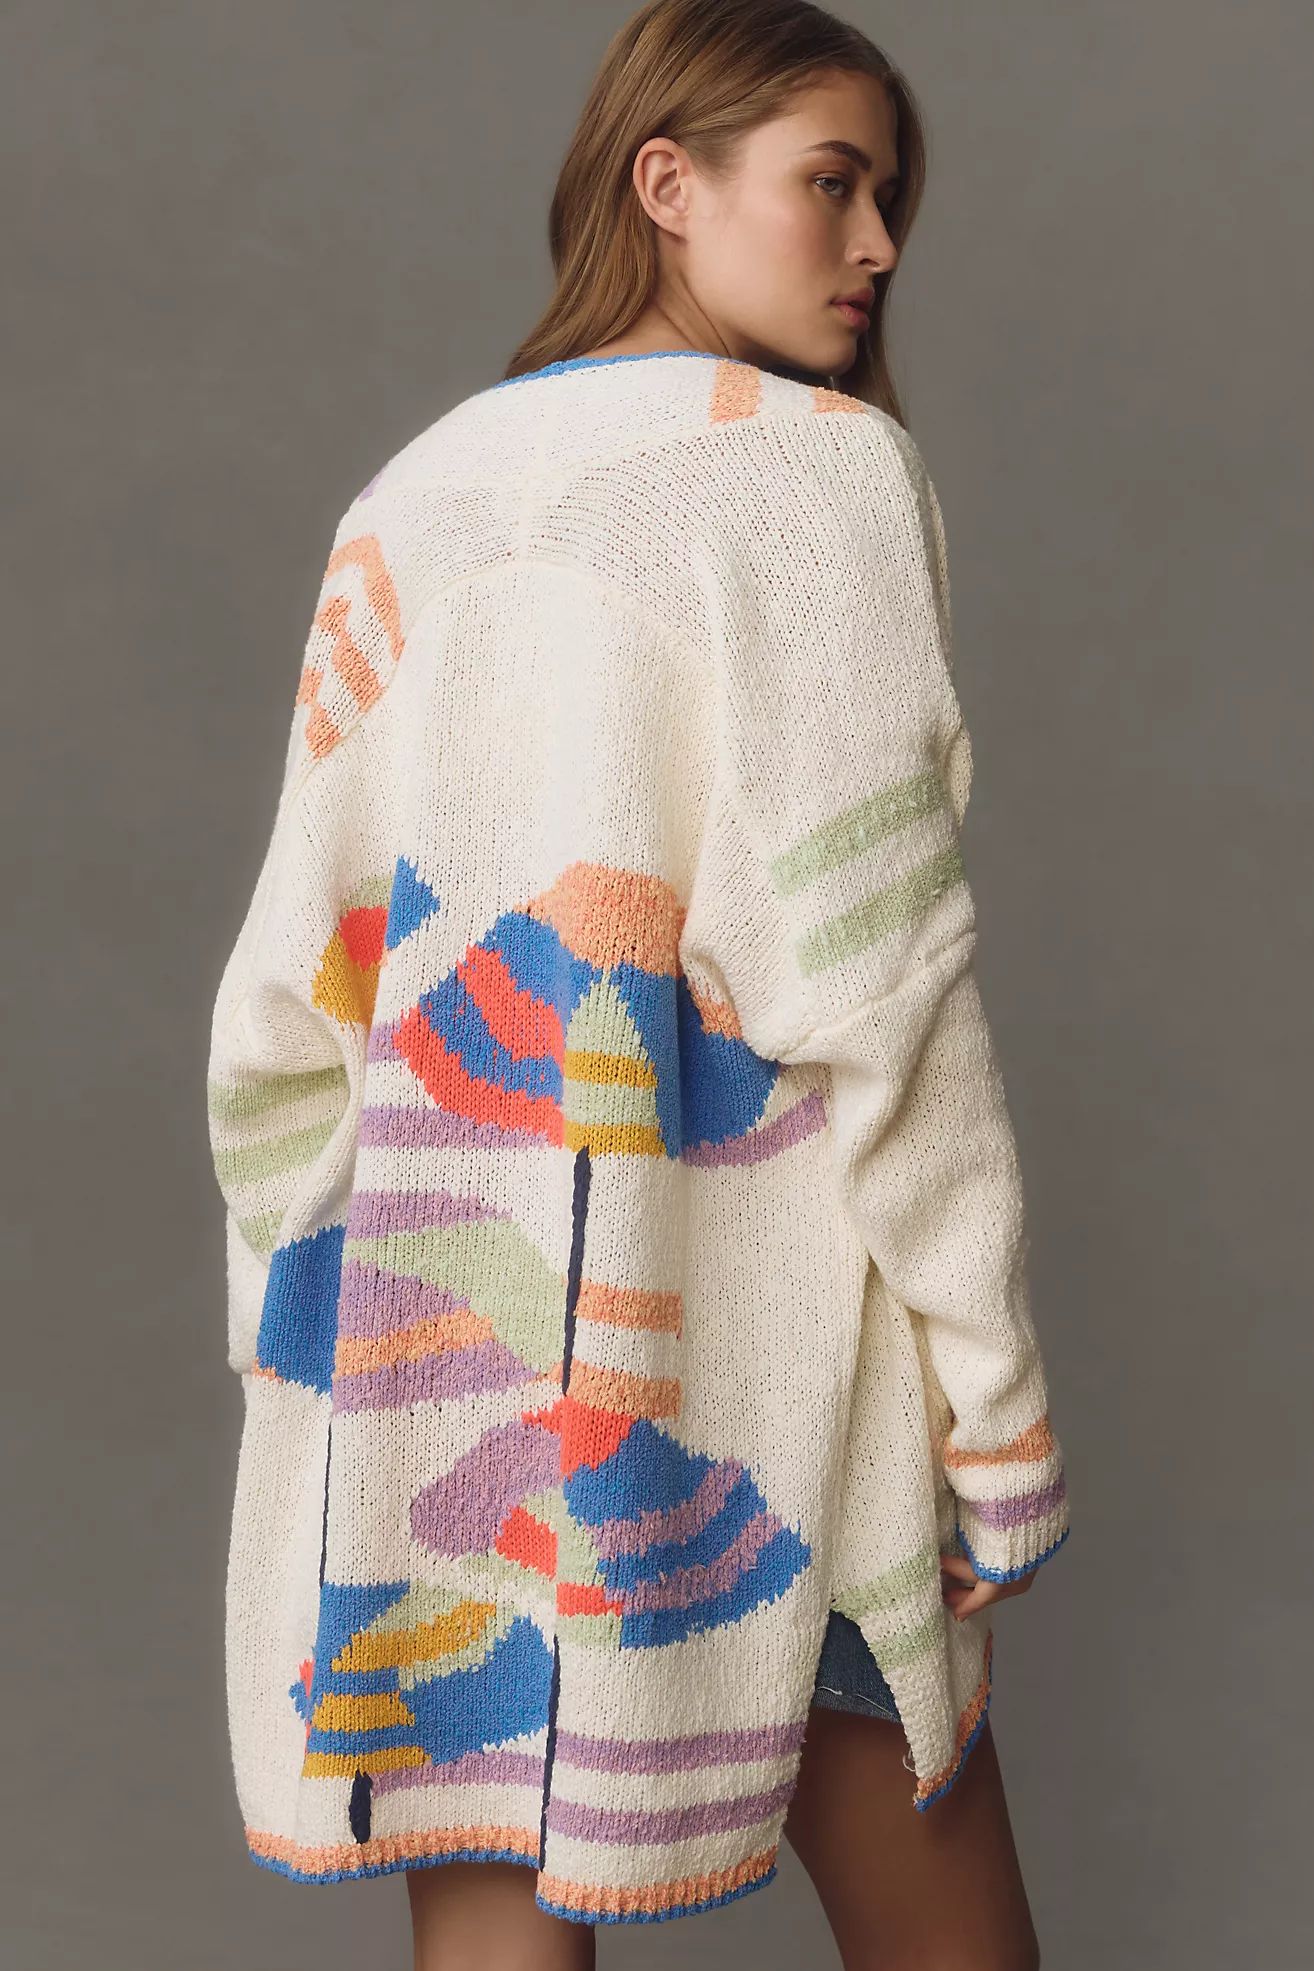 Maeve Umbrella Cardigan Sweater | Anthropologie (US)